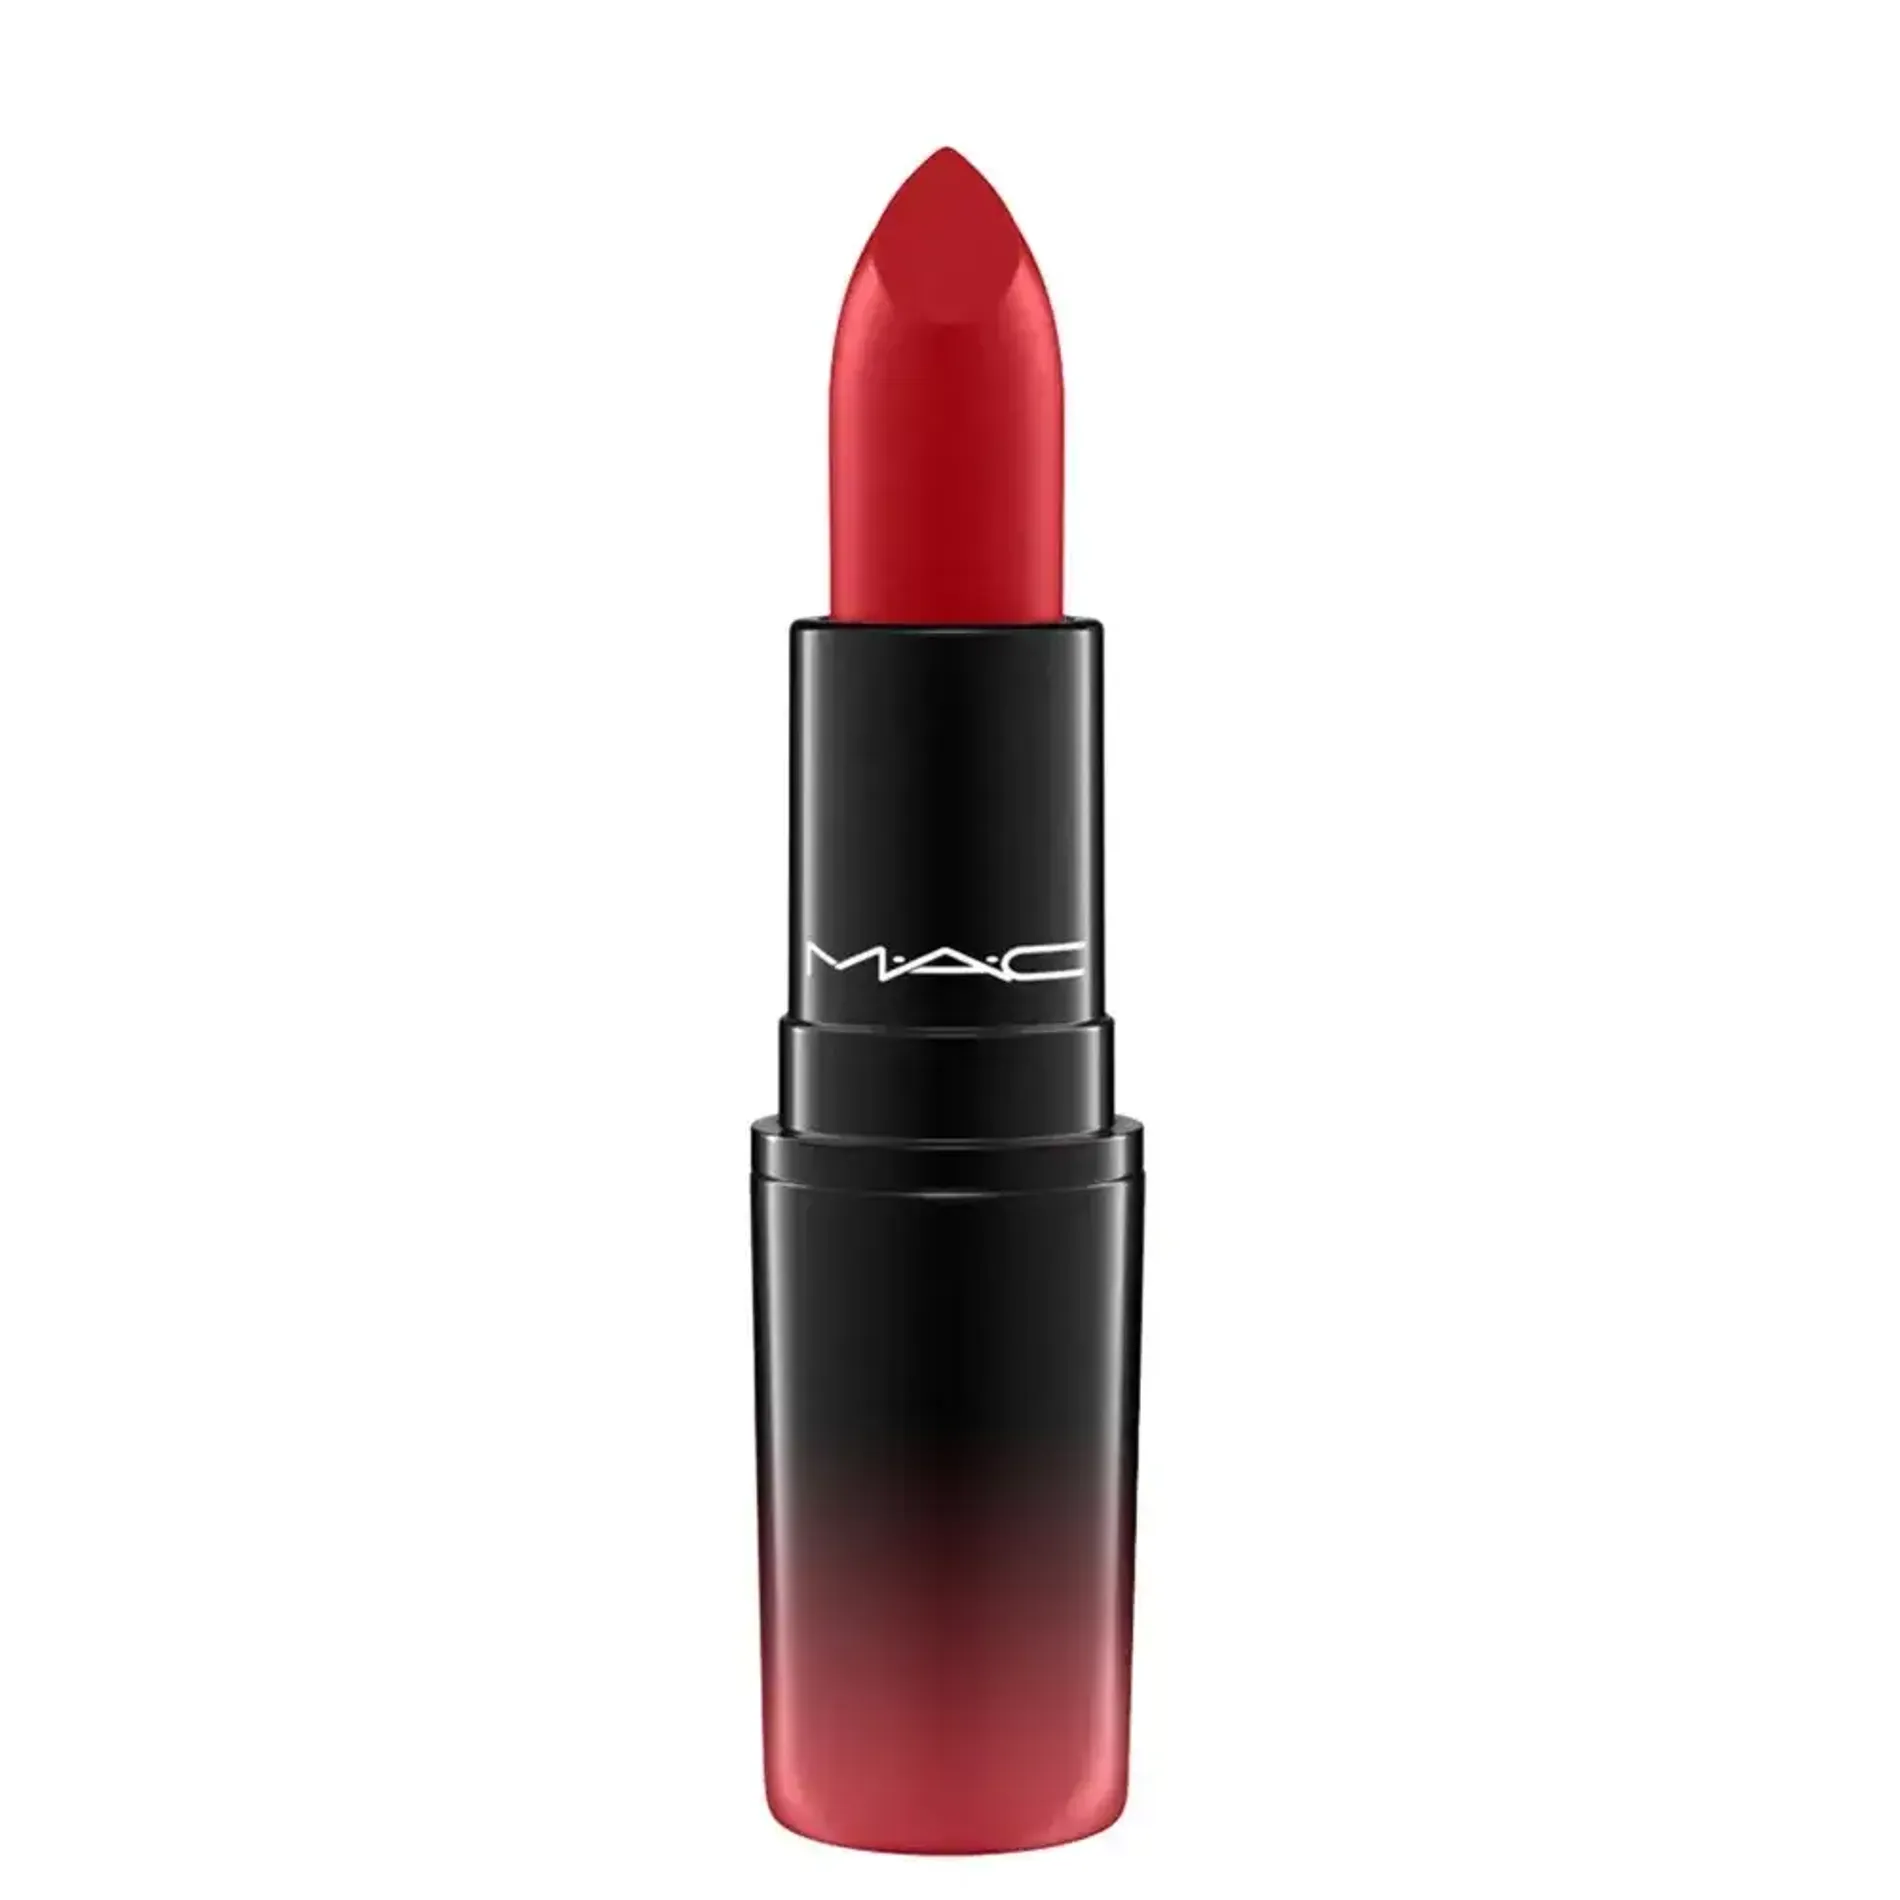 son-thoi-mac-love-me-lipstick-3g-8